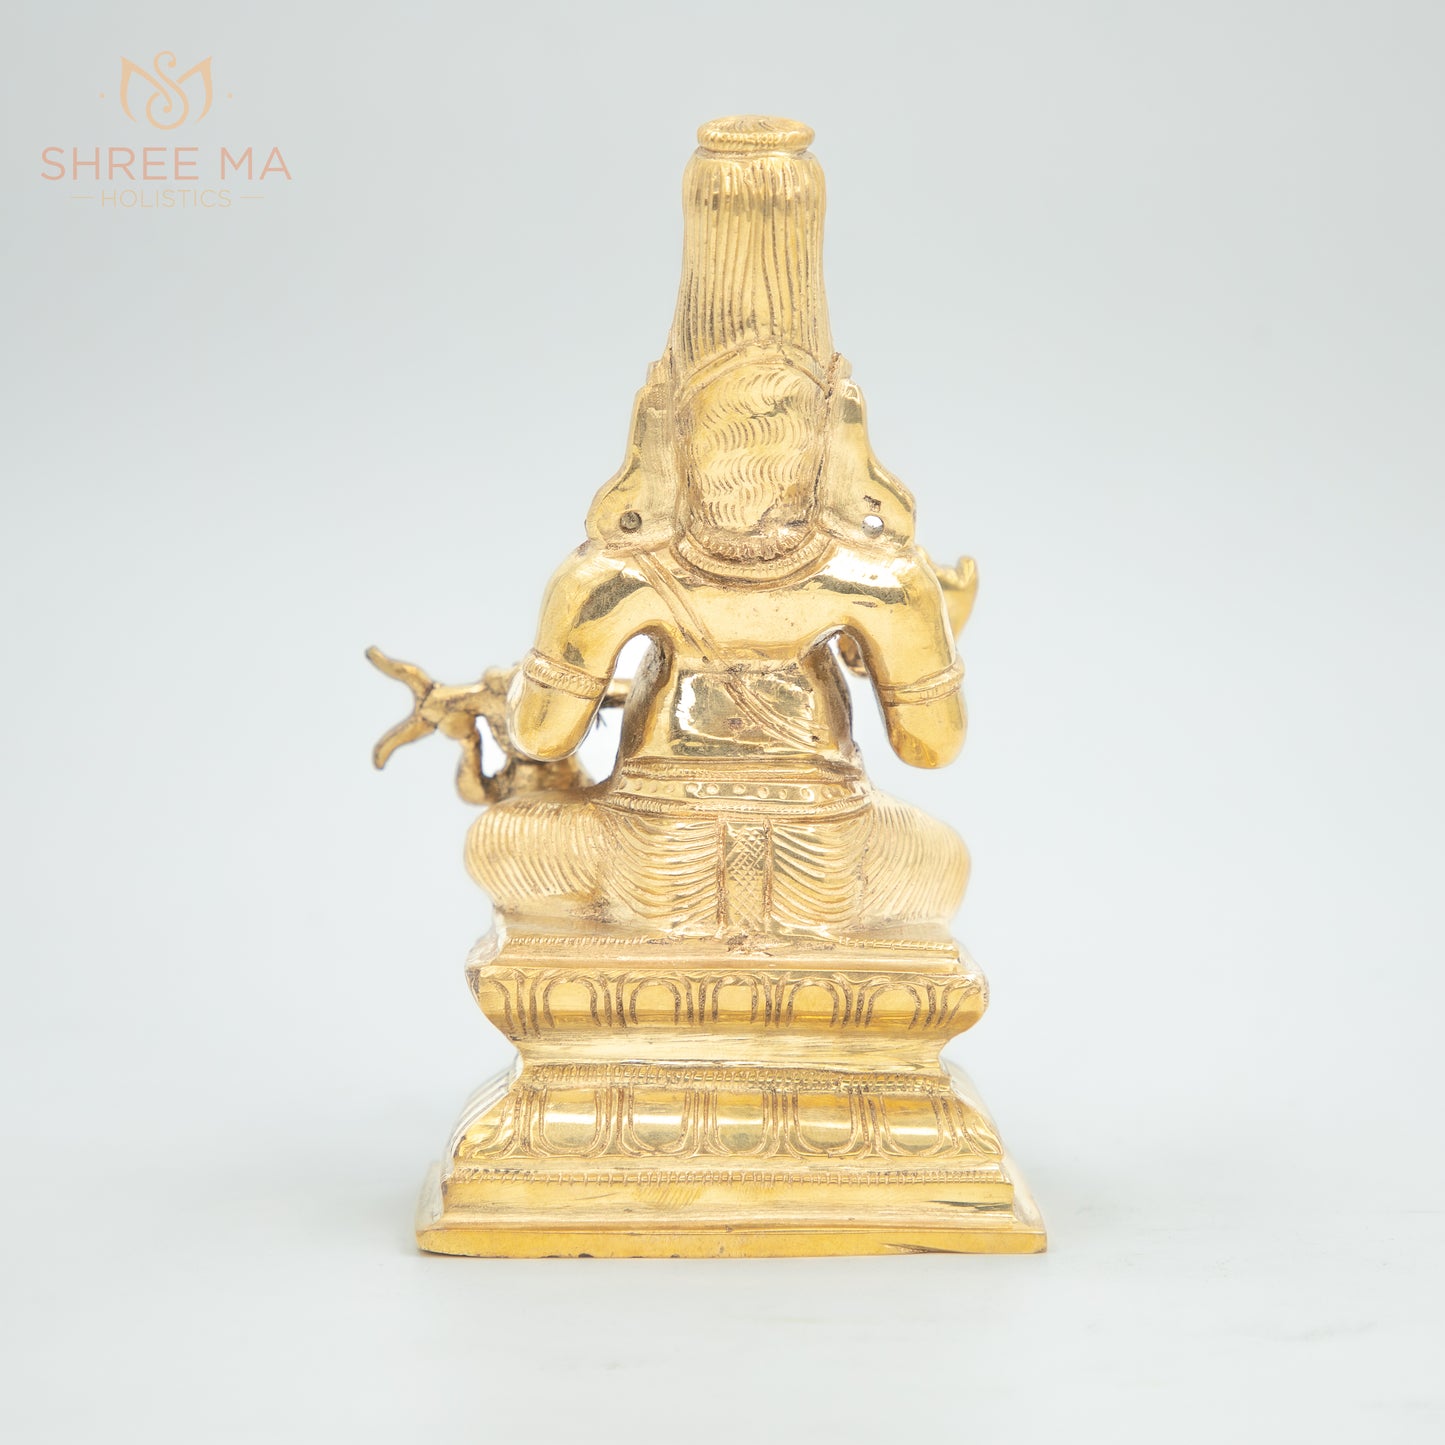 Agasthya Muni 6" inches panchaloha idol